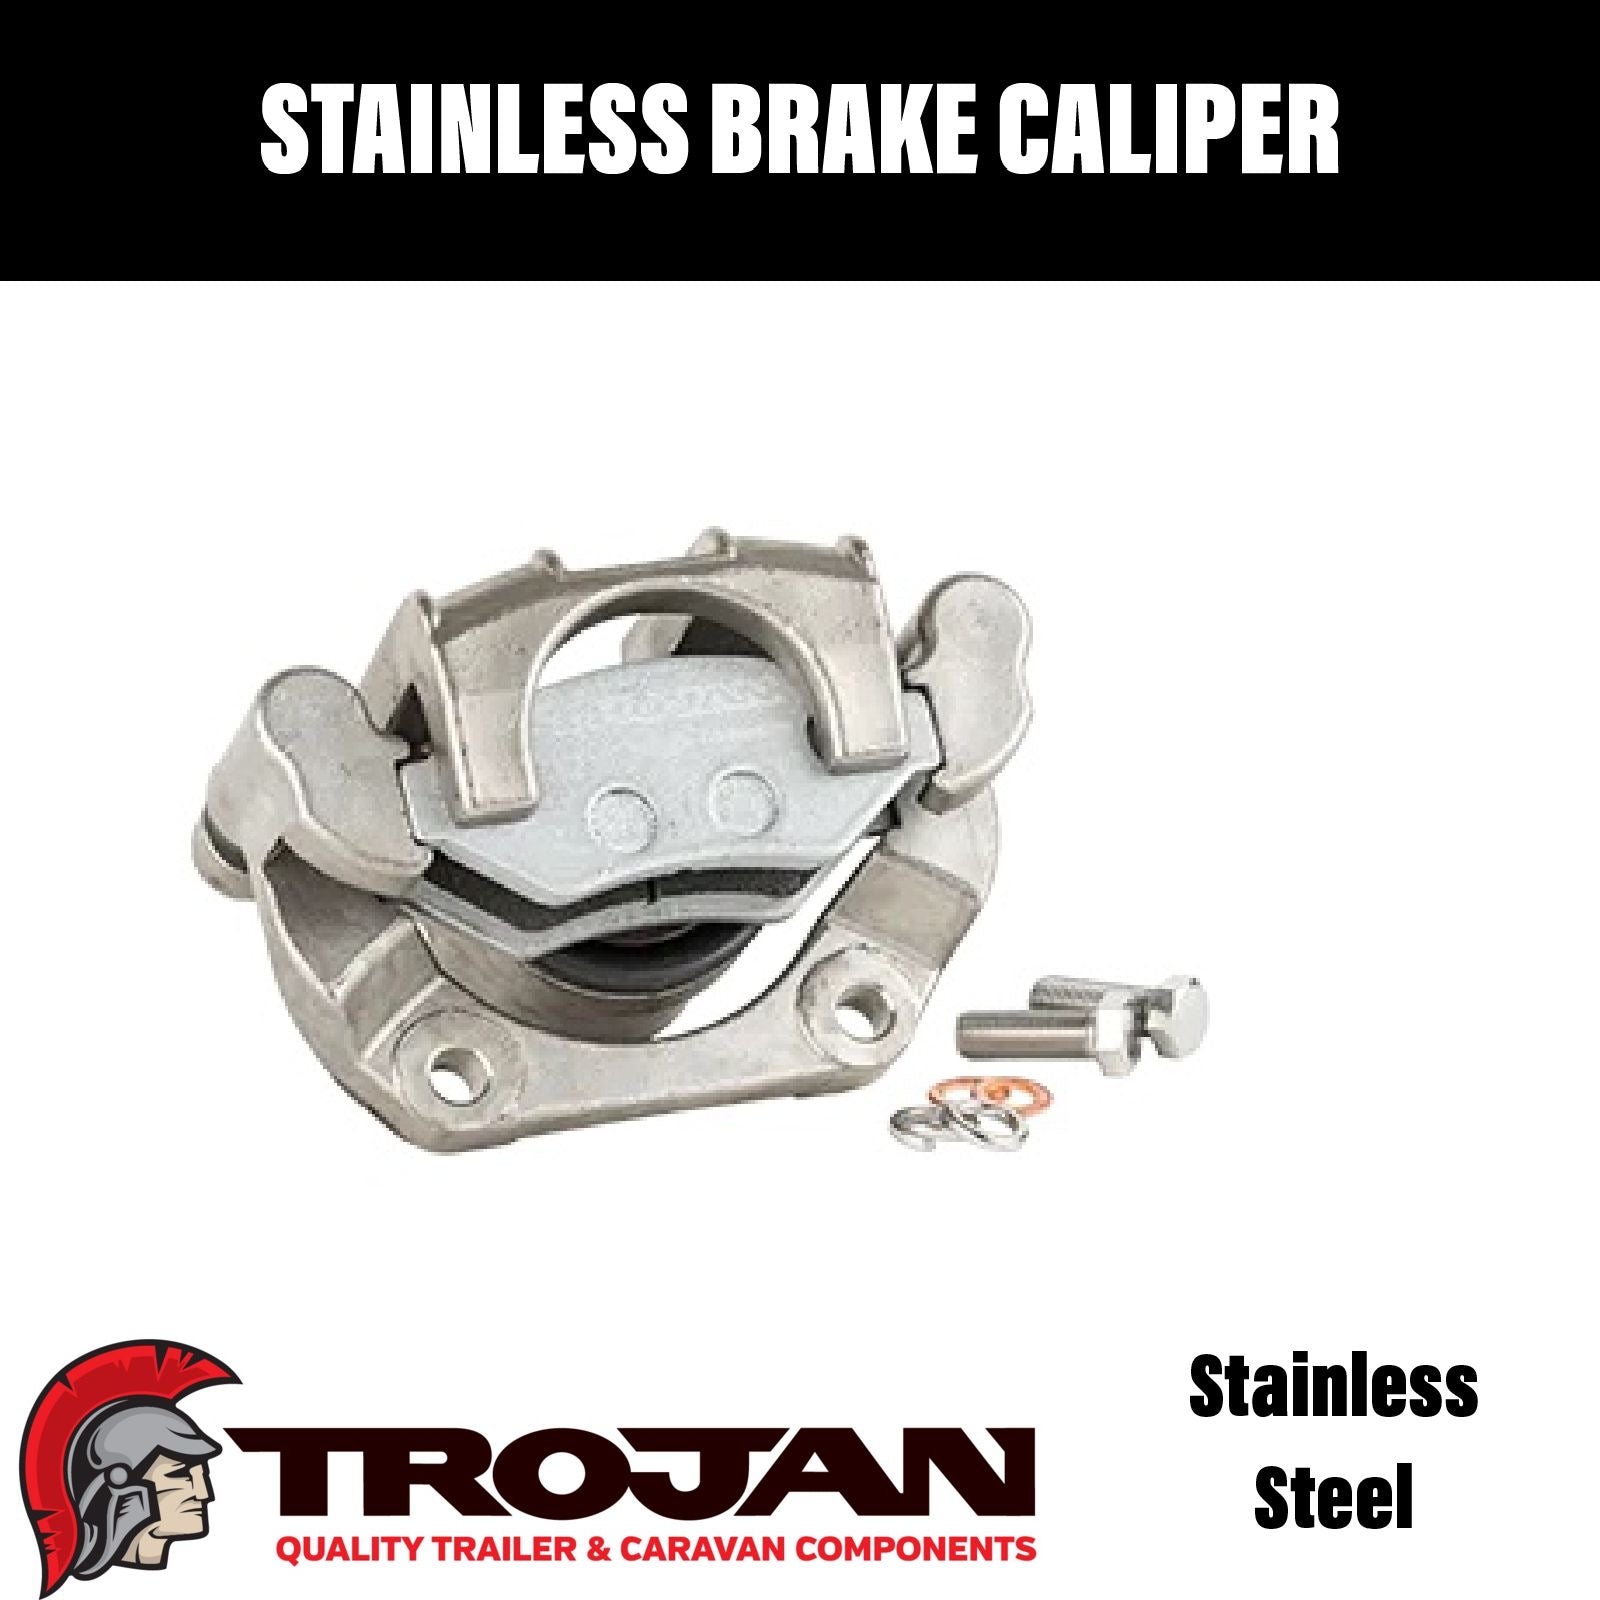 Trojan Stainless Steel Brake Caliper